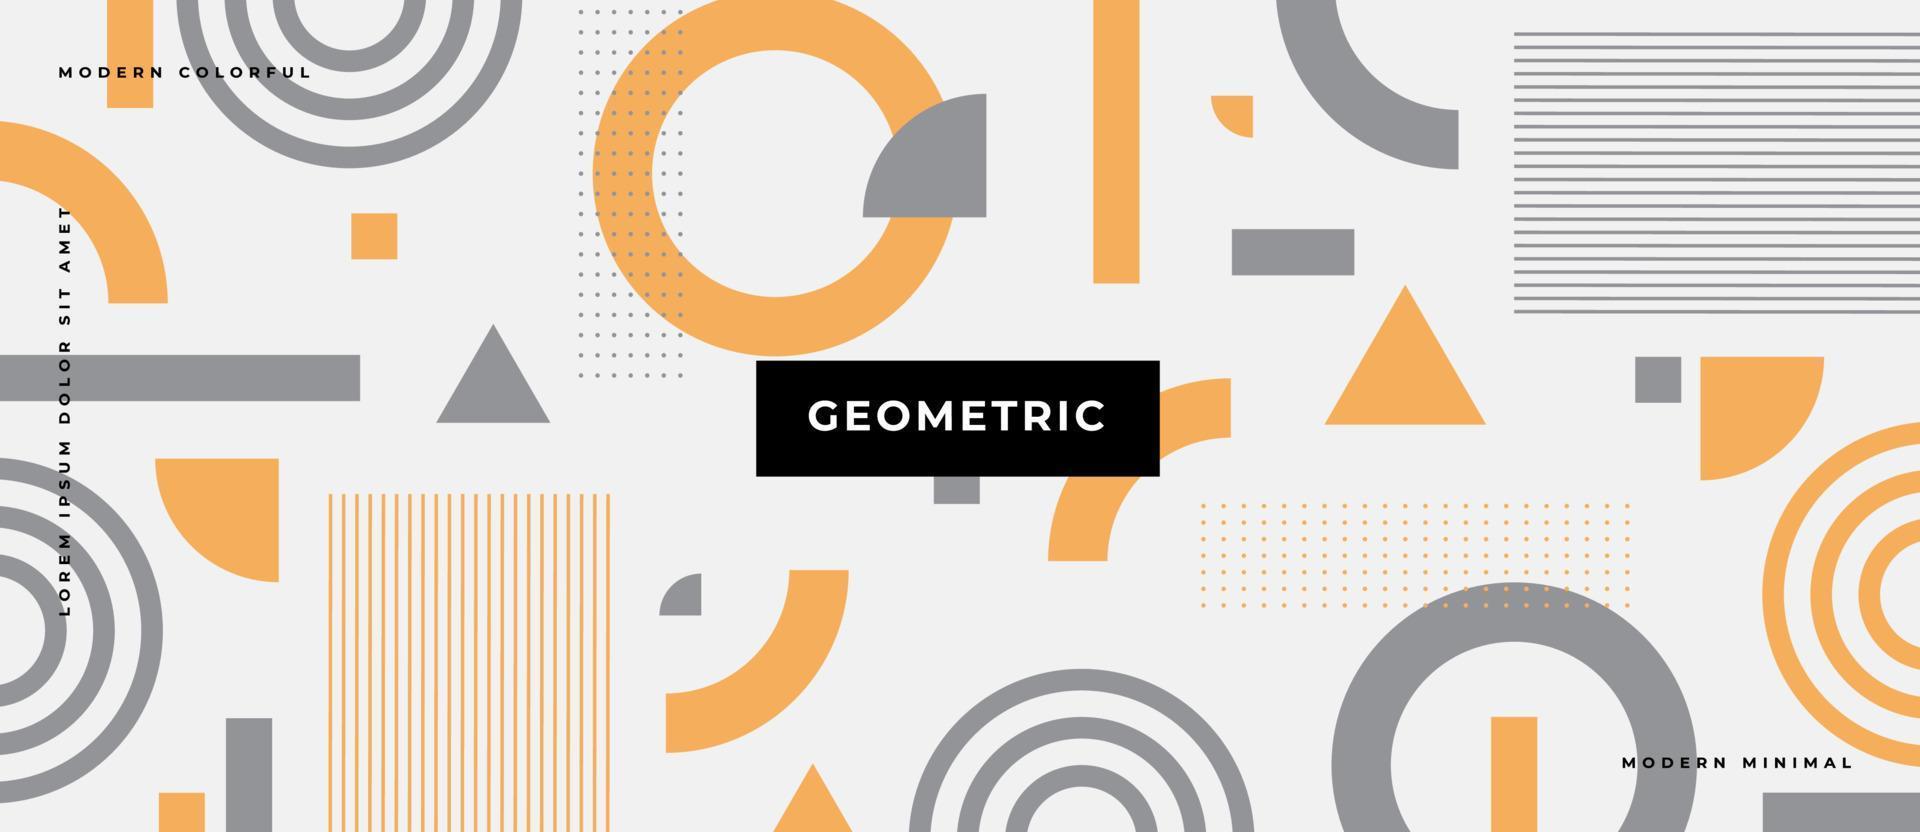 elementi di design di memphis. linea geometrica pastello piatta, triangolo cerchio, forme grafiche, stile minimal hipster su sfondo bianco. vettore